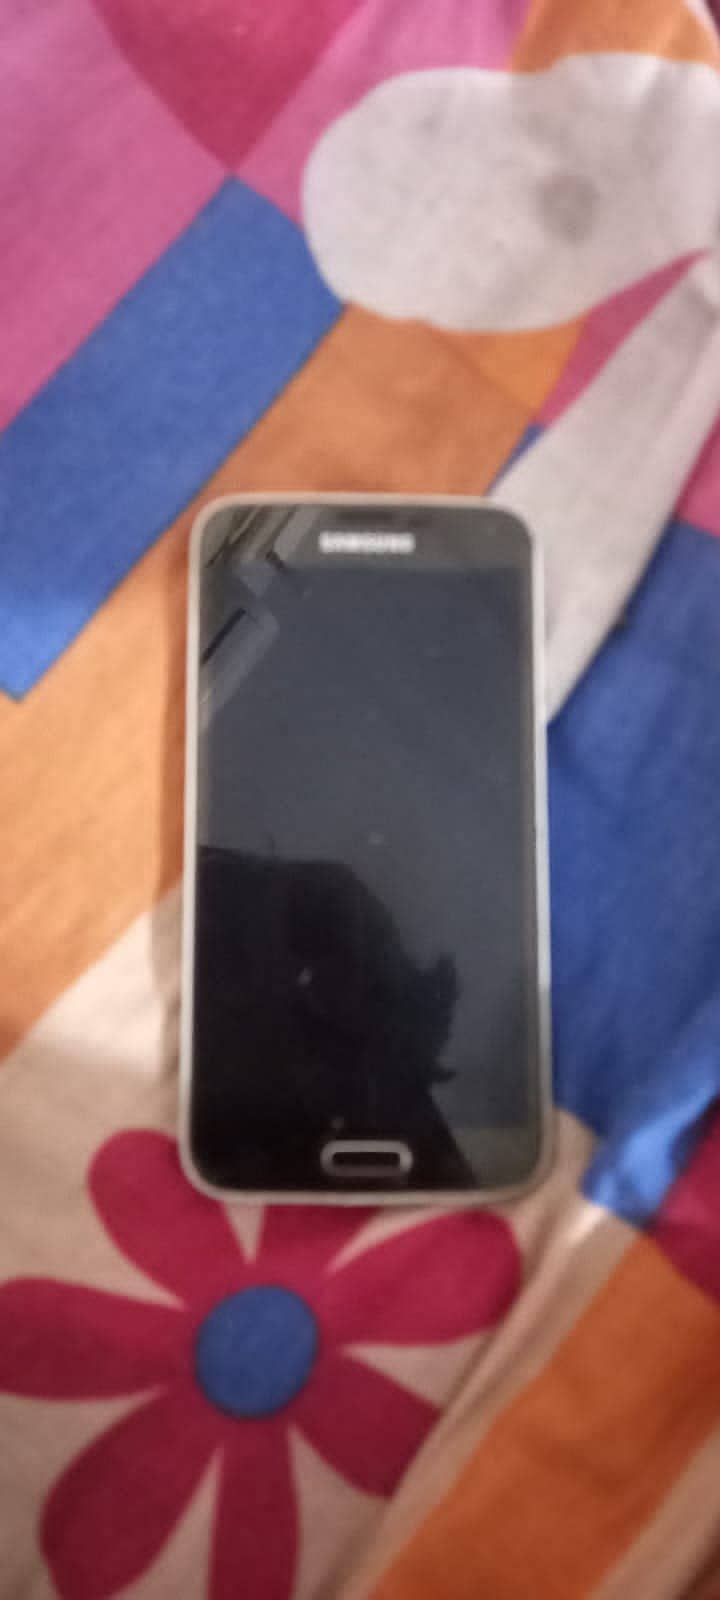 Samsung s5 3